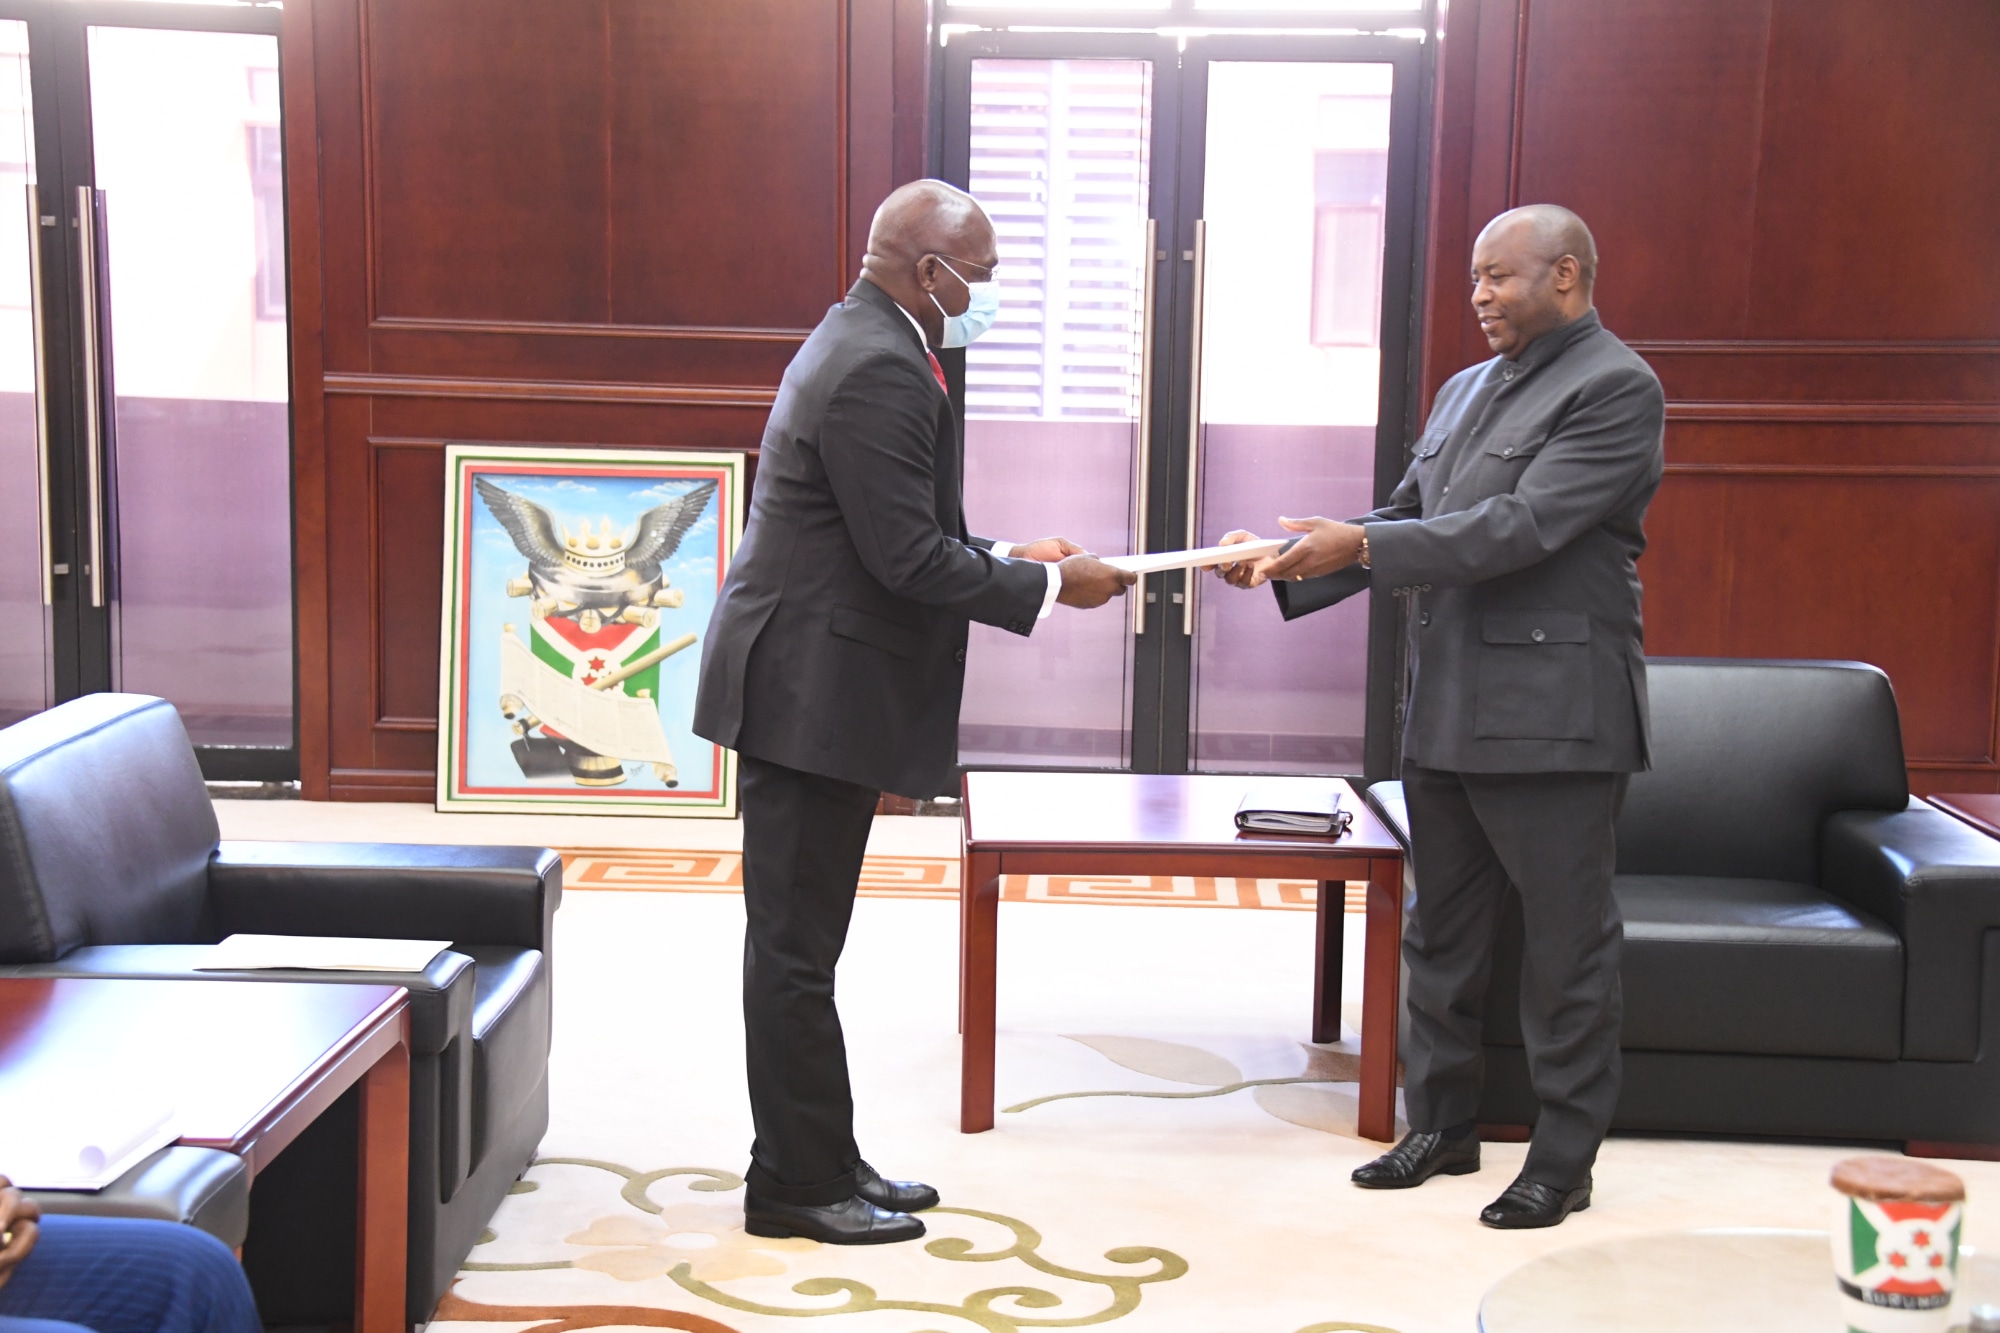 Le Ministre Angolais des Relations Extérieures reçu par le Président Ndayishimiye pour lui remettre un message du Président Joào Lourenço et lui présenter le nouveau Secrétaire Exécutif de la CIRGL